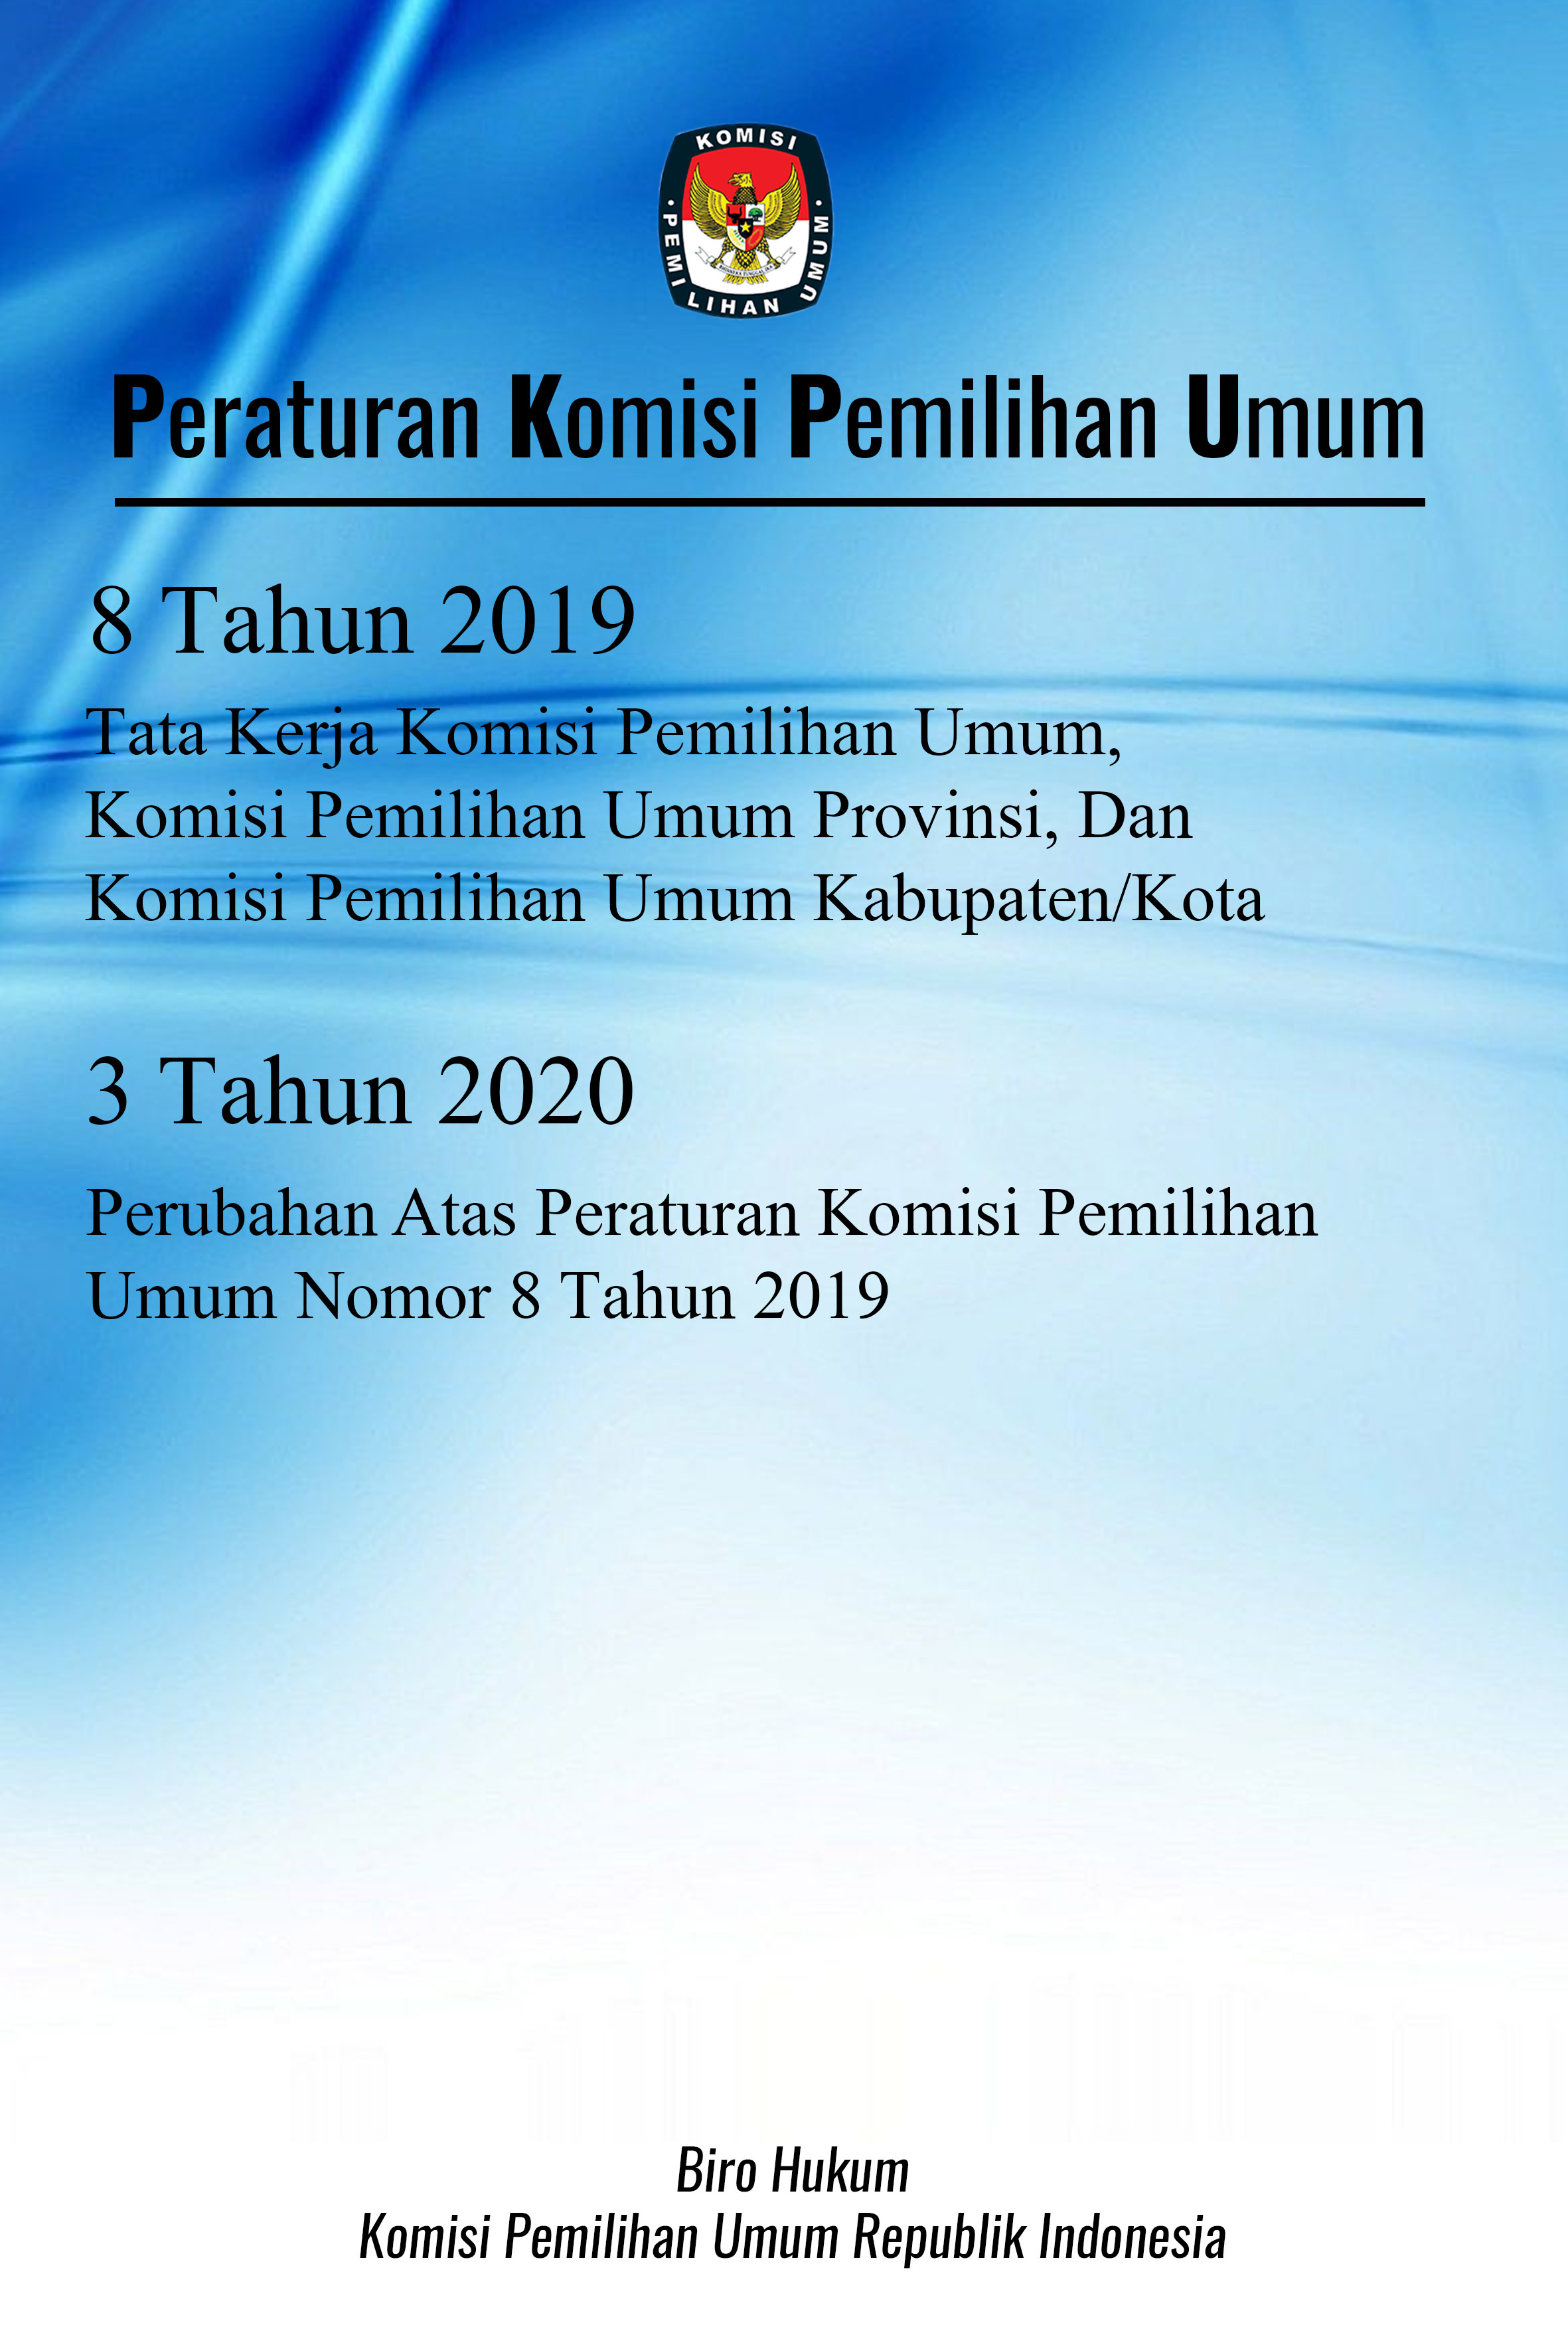 Peraturan komisi pemilihan umum nomor 8 tahun 2019 dan 3 tahun 2020